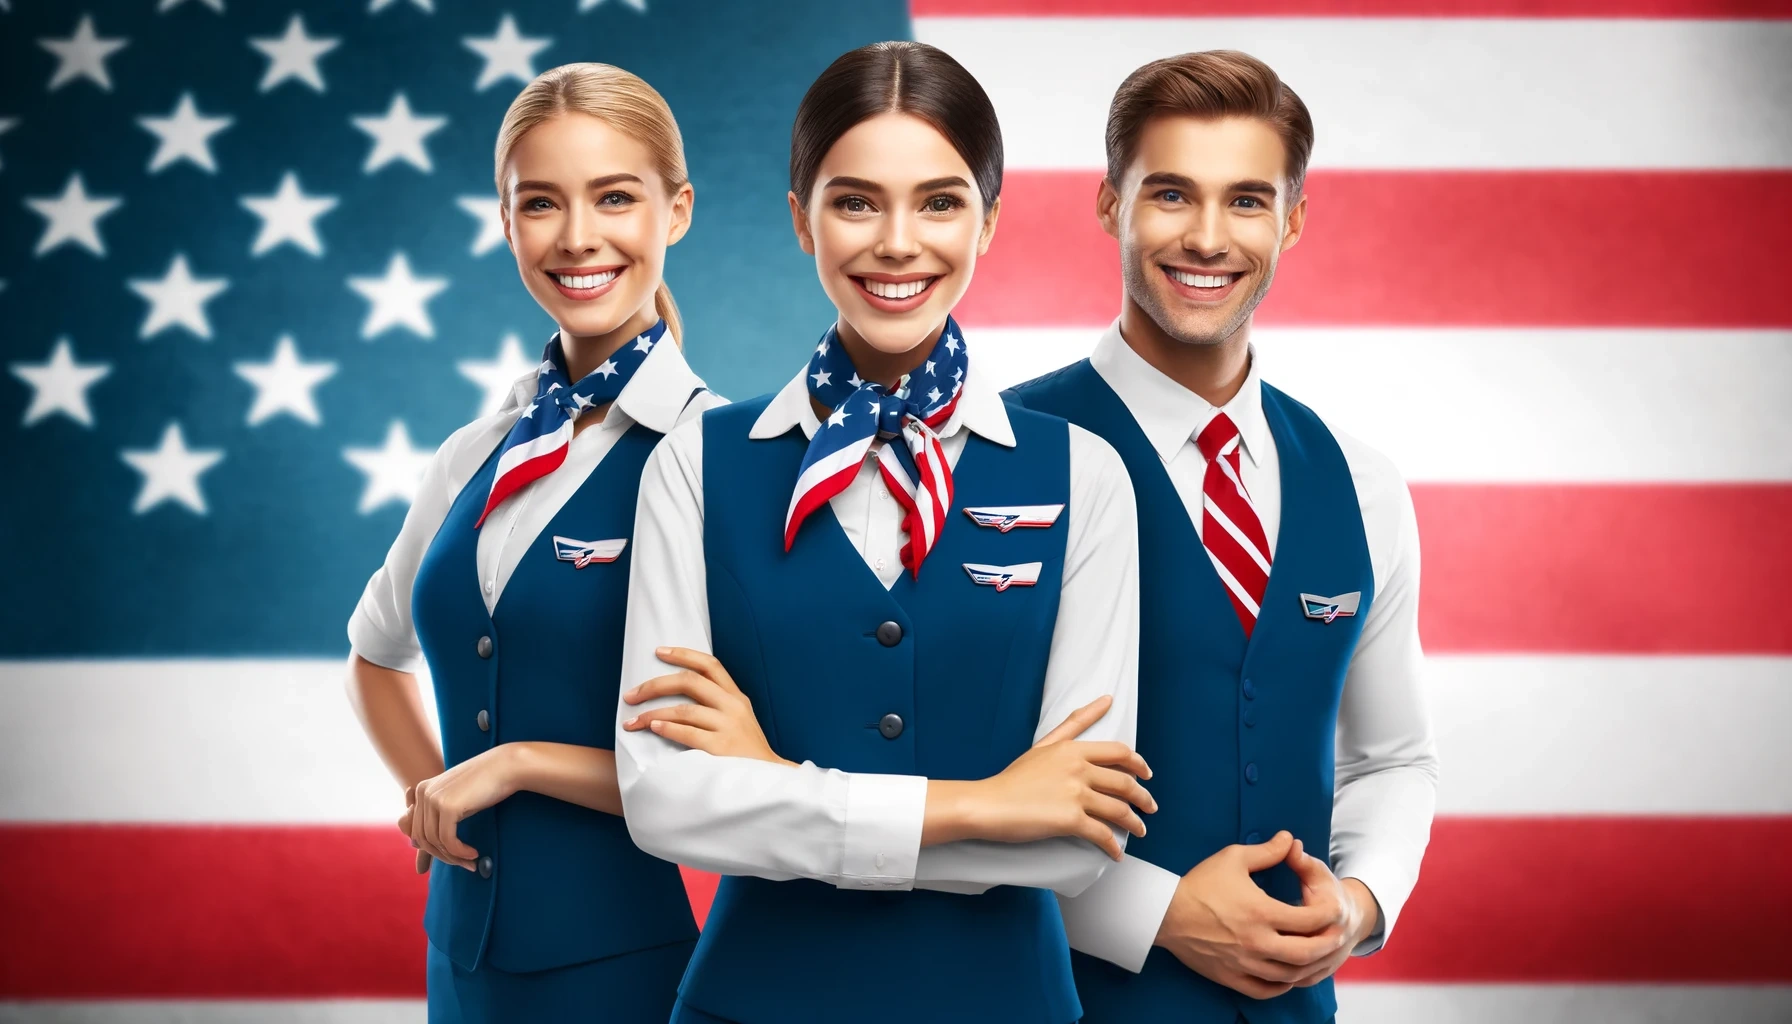 Ofertas de trabajo en American Airlines: Aprende cómo solicitar fácilmente